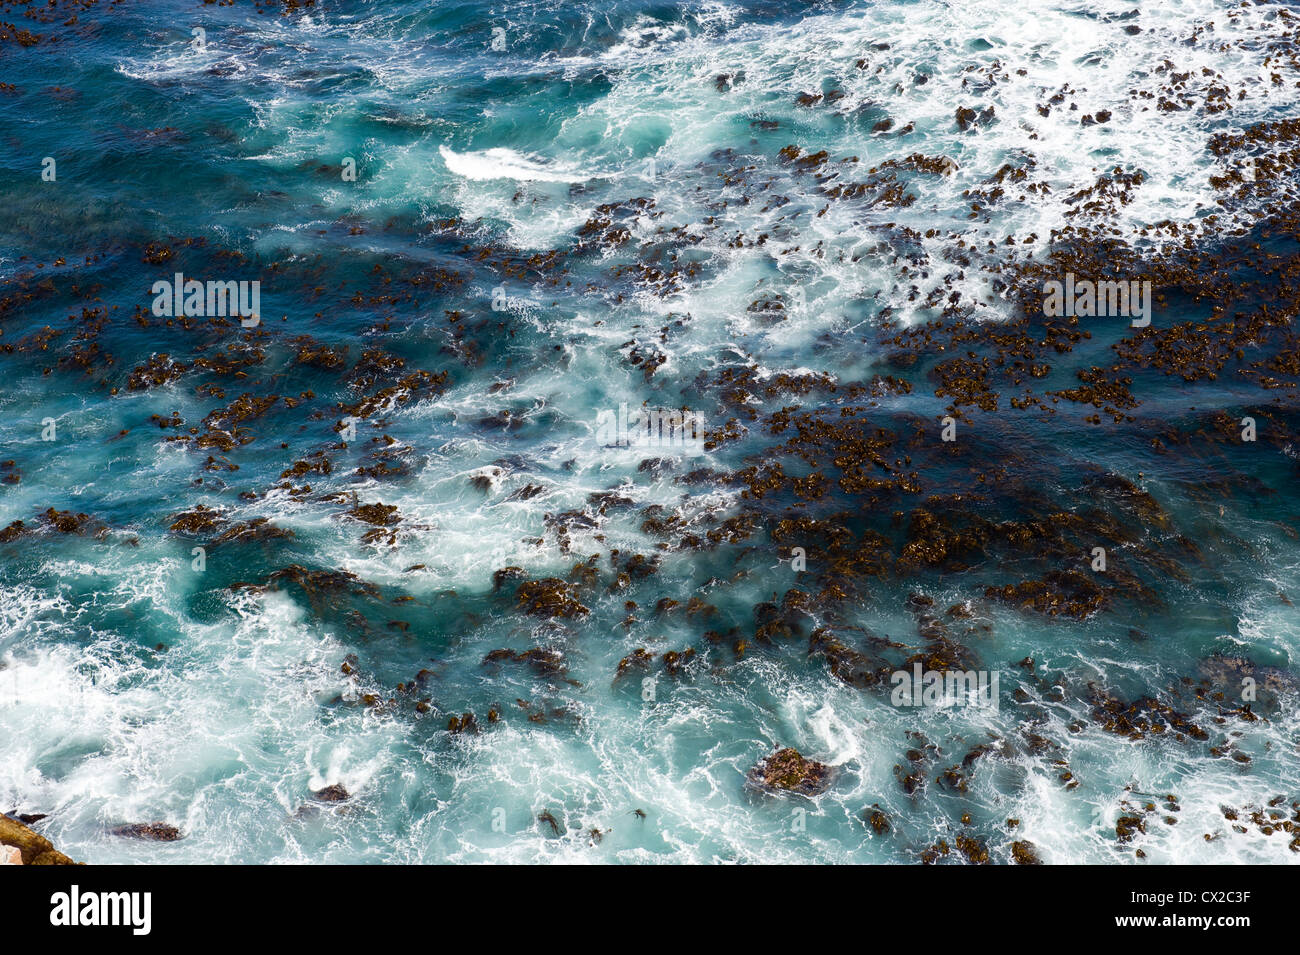 La 'forêt' de varech (algue brune) riche en éléments nutritifs dans le surf-pompage au cap de Bonne-Espérance, Afrique du Sud Banque D'Images